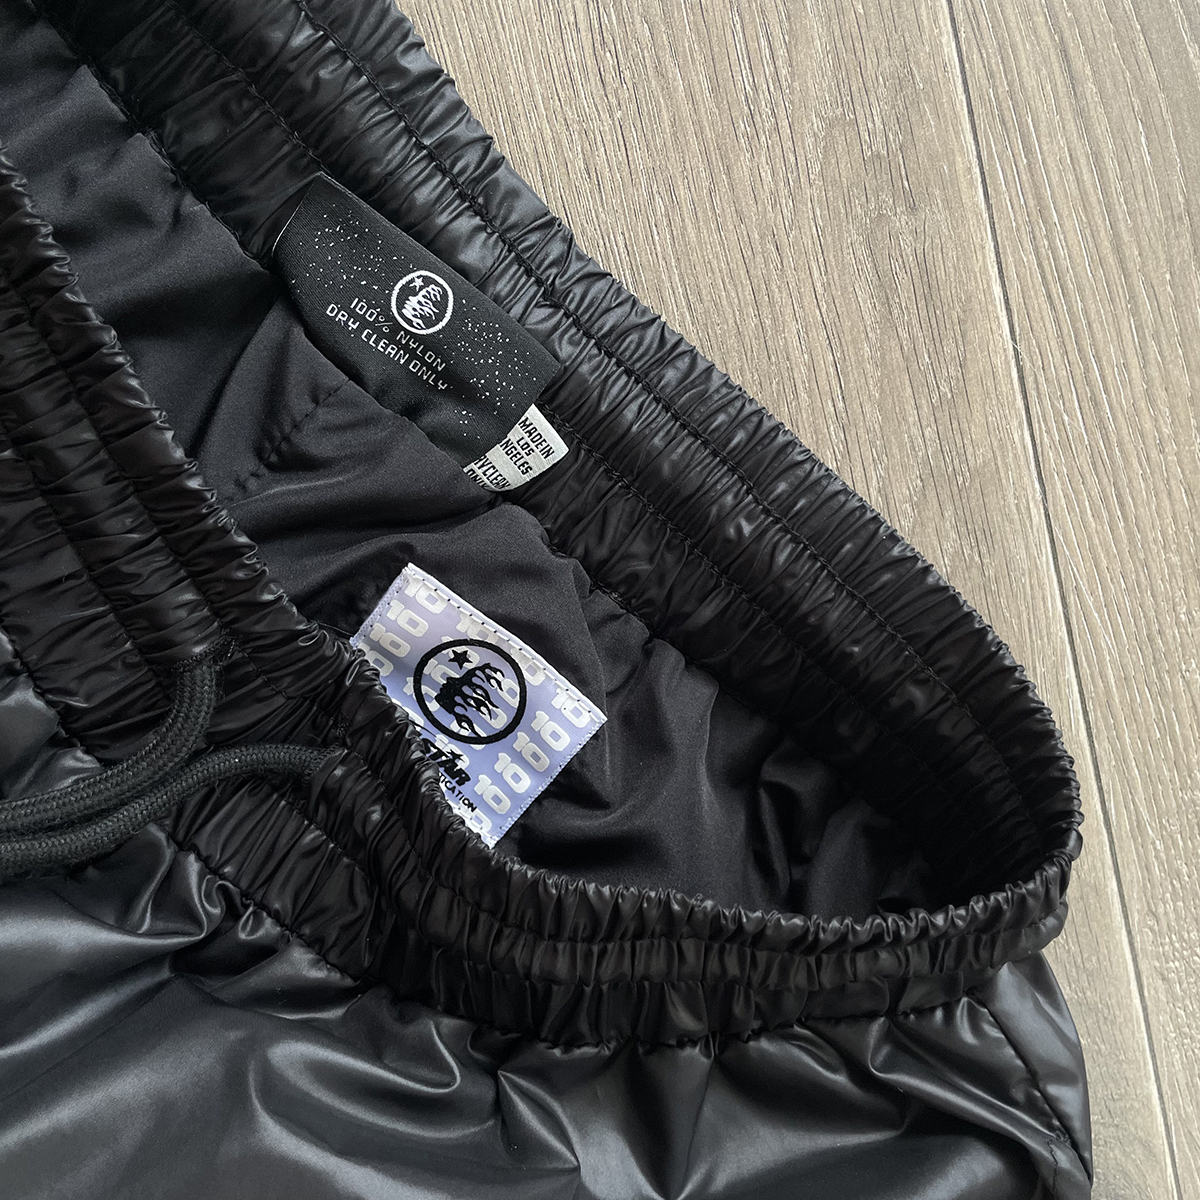 Schwarze Shorts Jogger Sommerhose für Männer Frauen Kordelzug bedruckte kurze Hosen Urlaub Baumwollkleidung 24SS